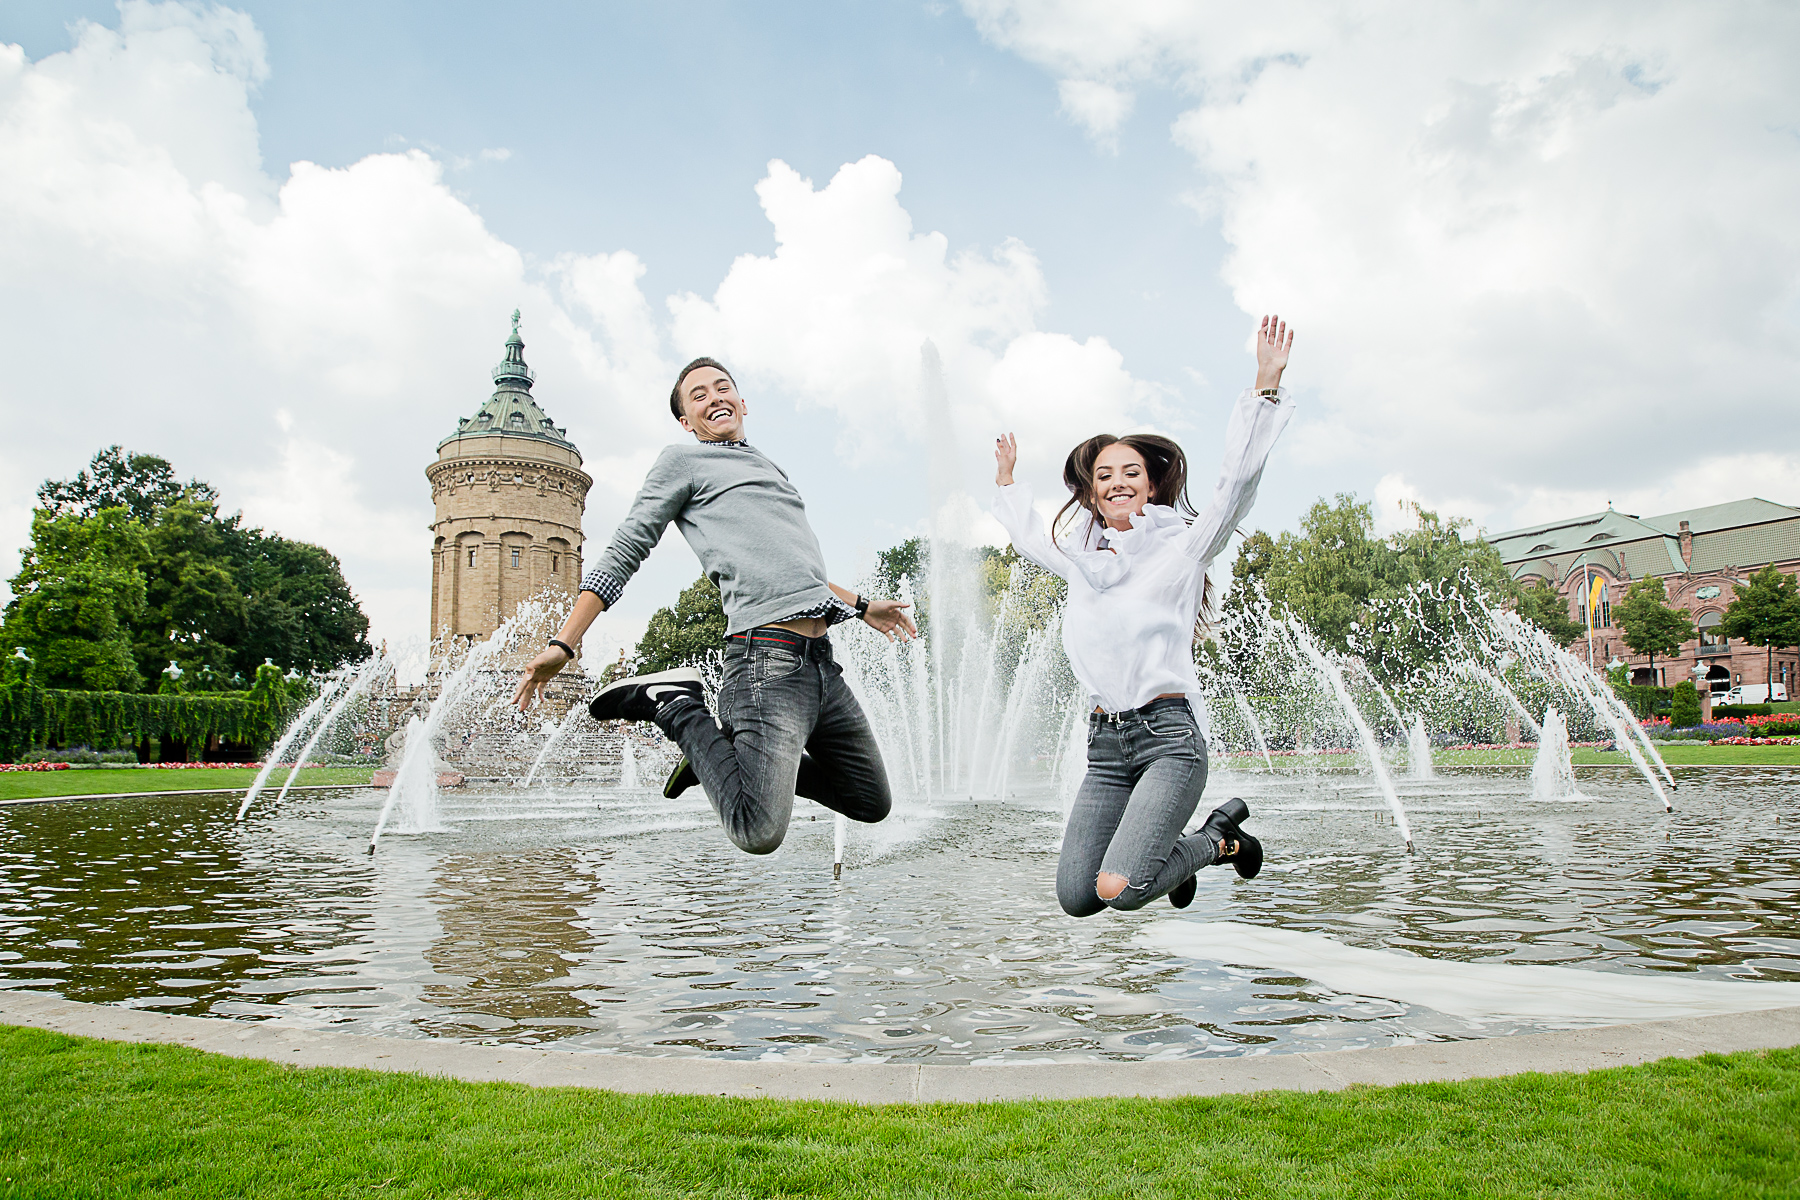 Ein junges Paar springt energievoll hoch, sodass ihre Beine angewinkelt sind. Sie lachen. Im Hintergrund sind Fontänen und der Wasserturm von Mannheim.